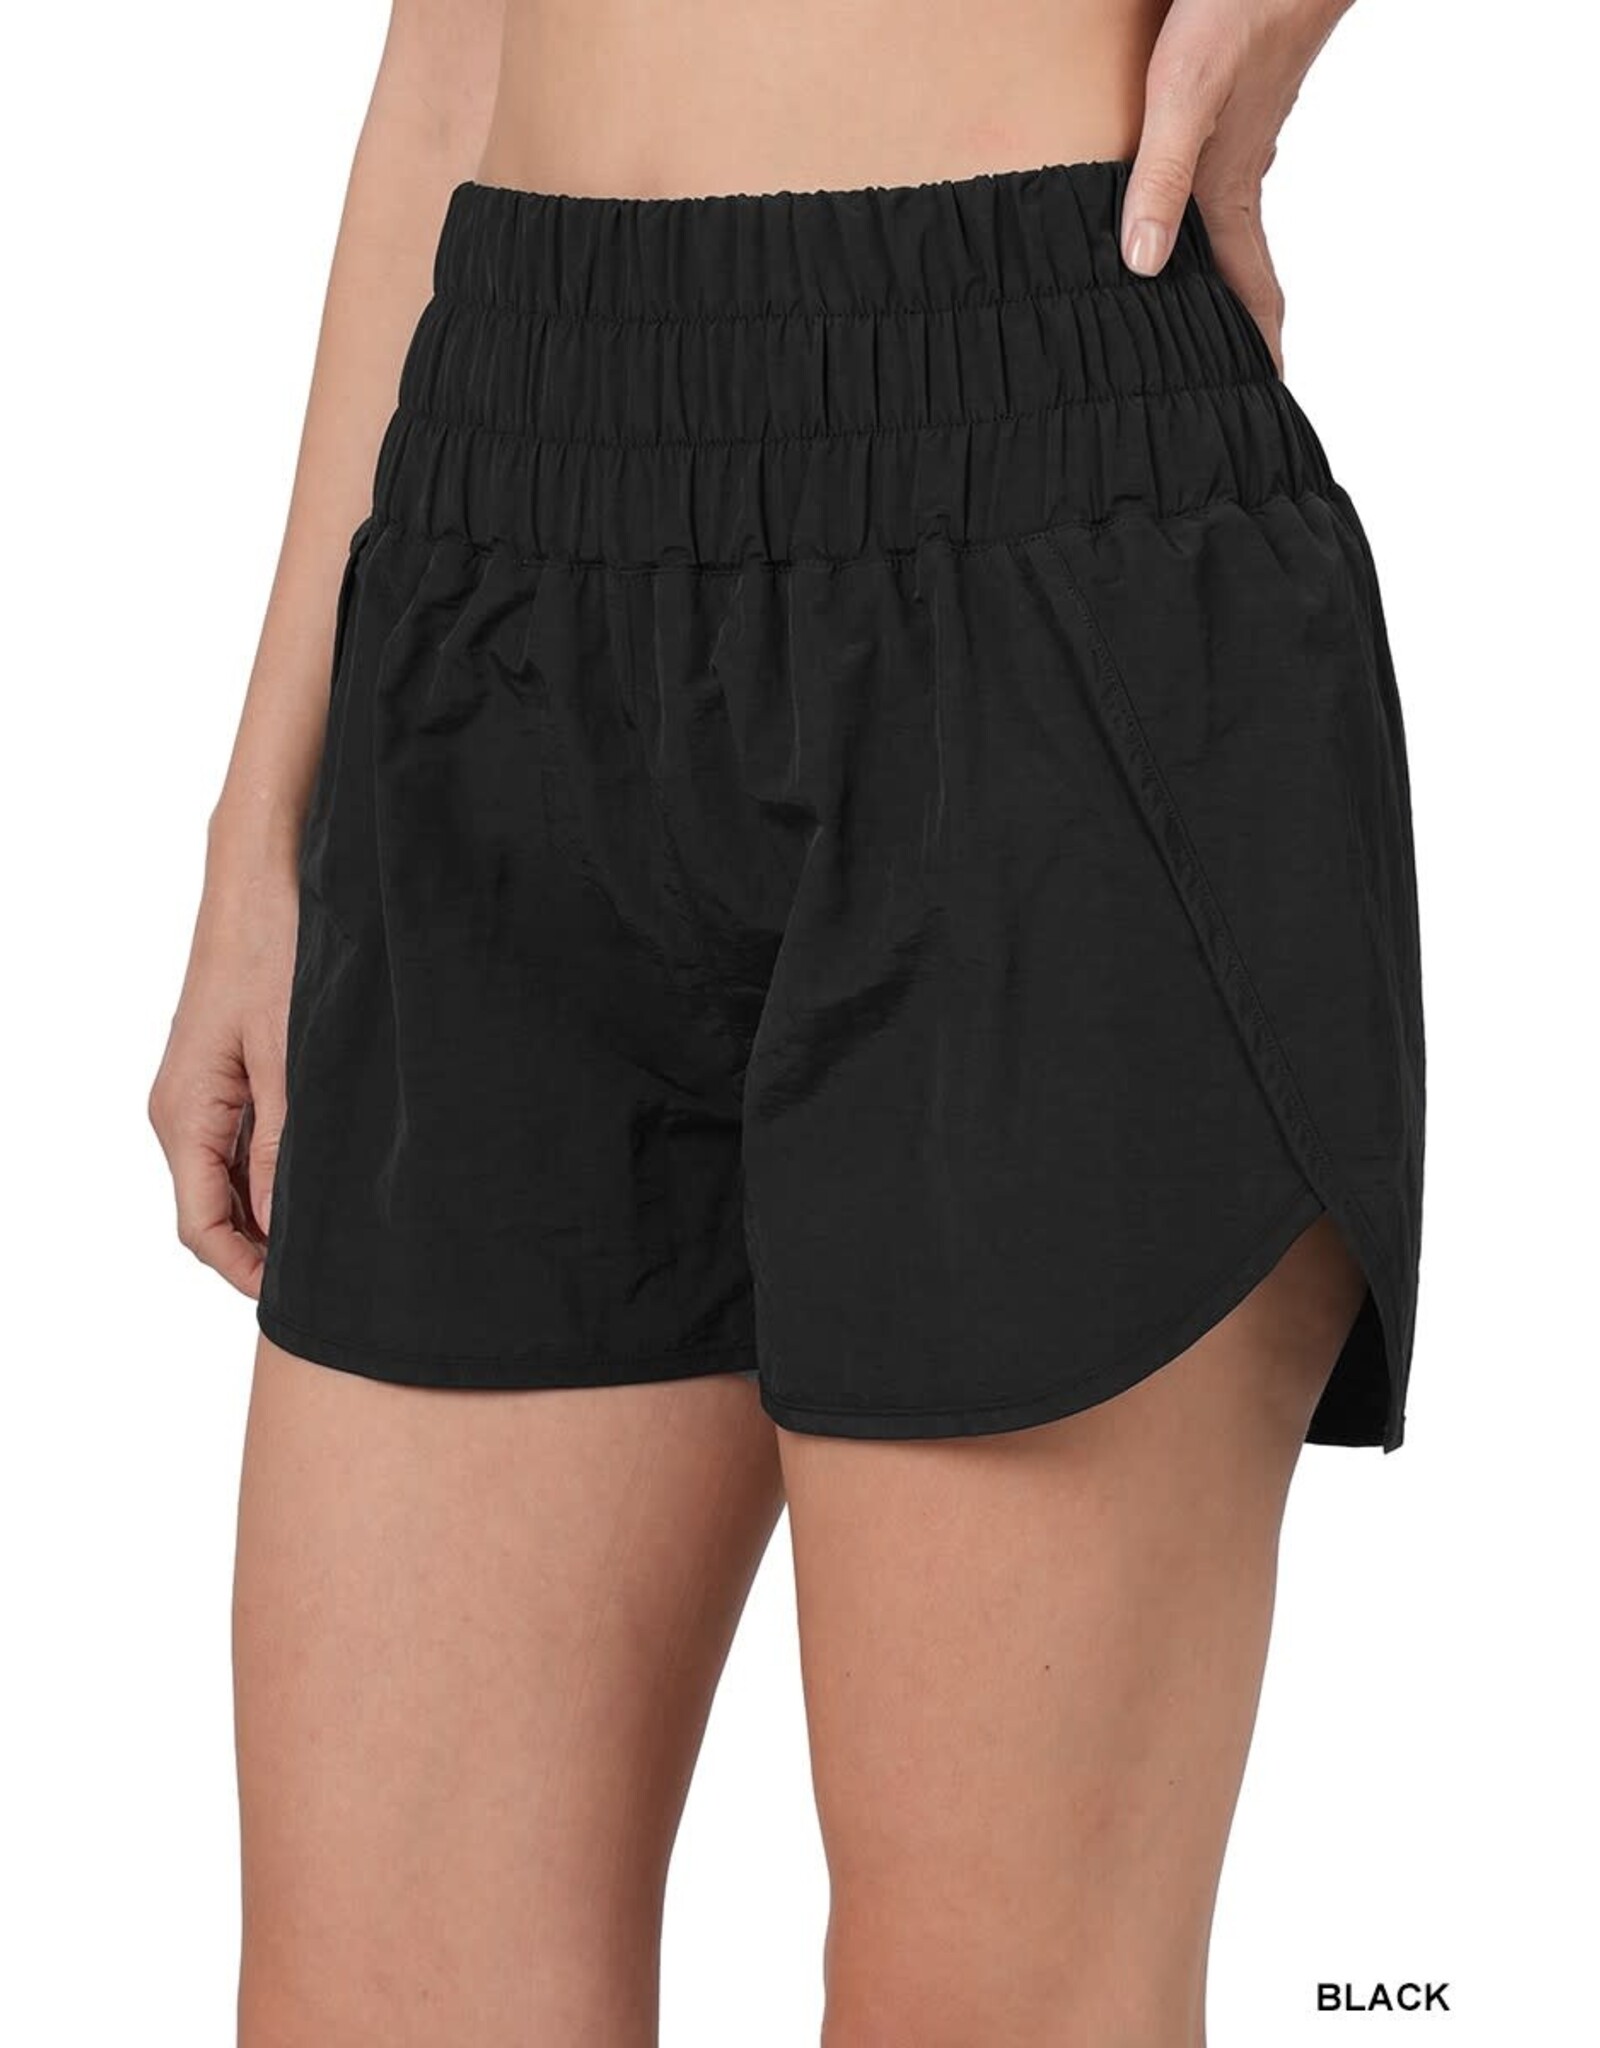 Black Smocked Waistband Shorts